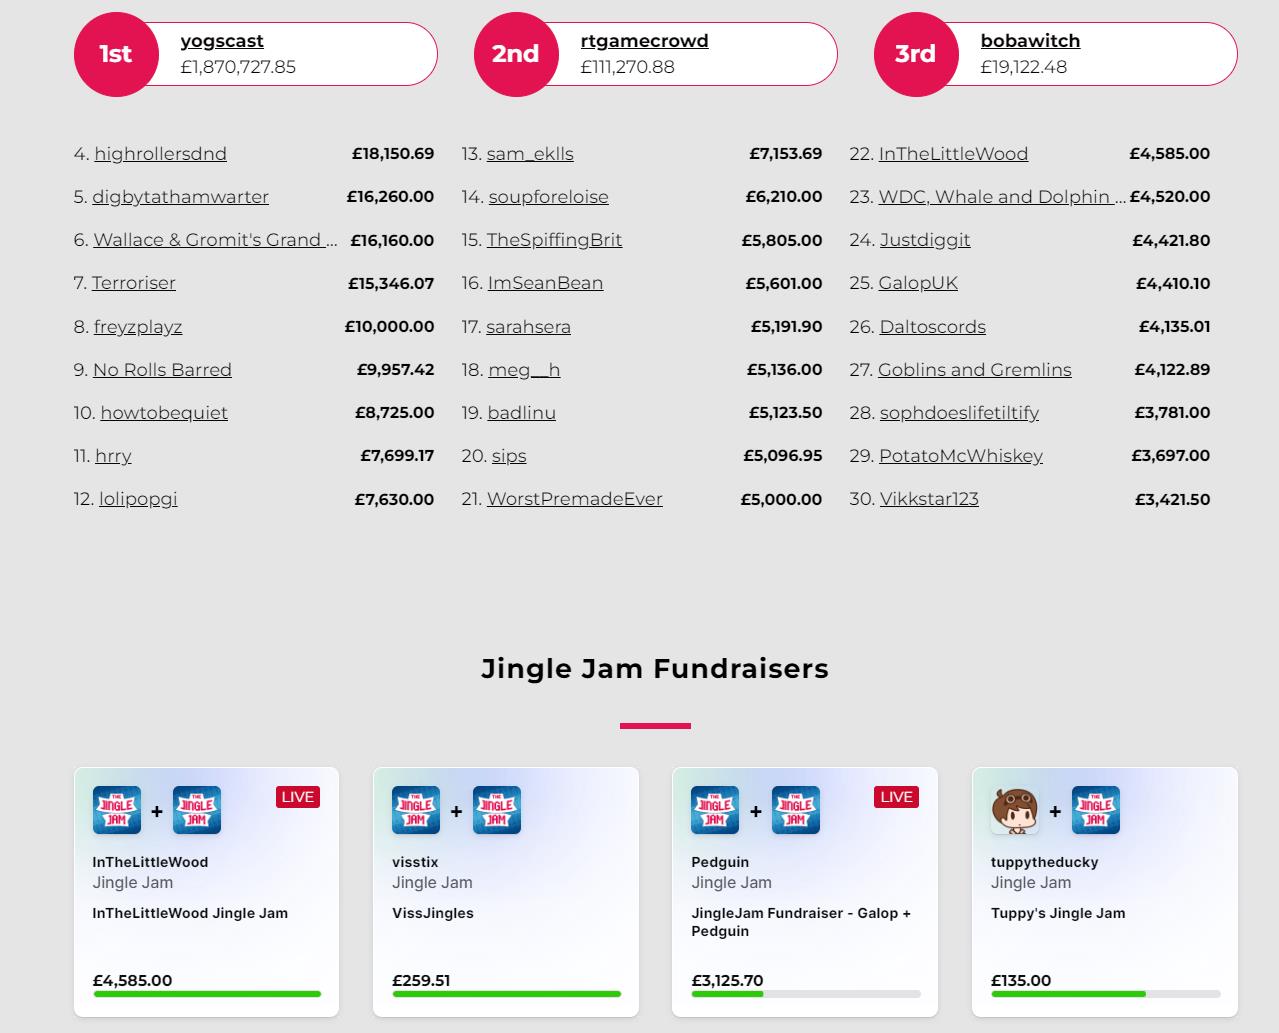 电子游戏筹款活动“Jingle Jam”自2011年以来已筹集超过2500万英镑